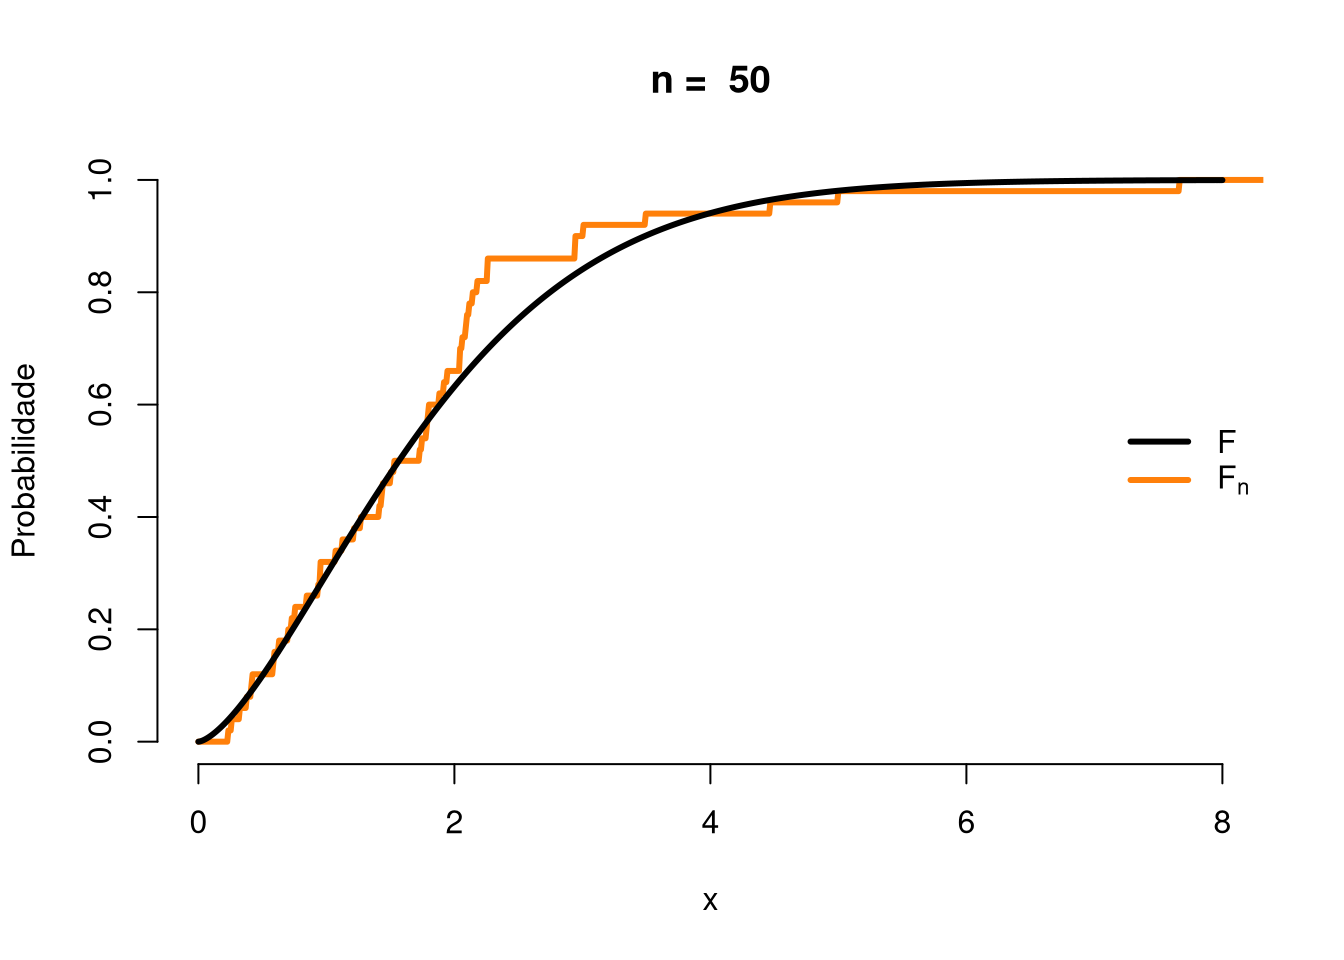 Função de distribuição empírica em azul versus a função de distribuição teórica em preto para um tamanho de amostra n = 50.